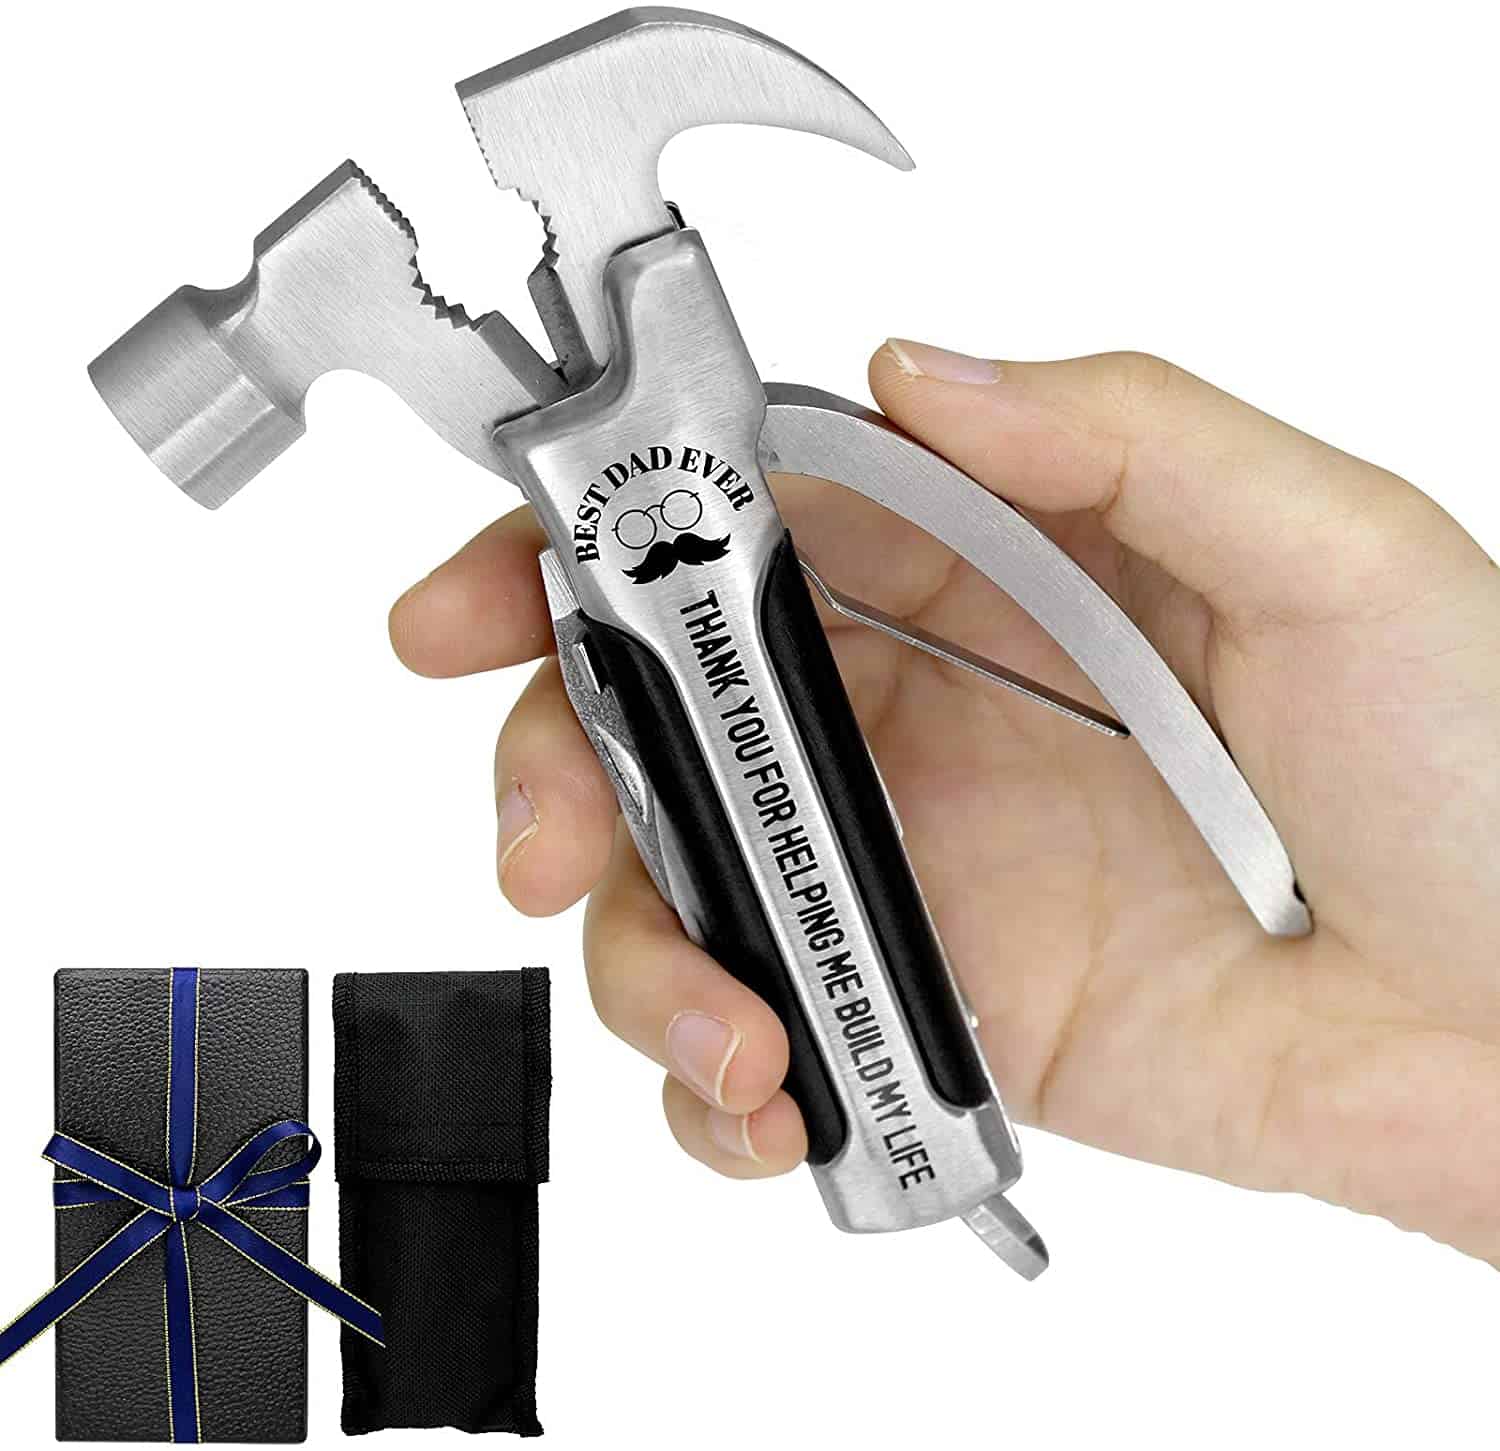 hammer pliers multi tool